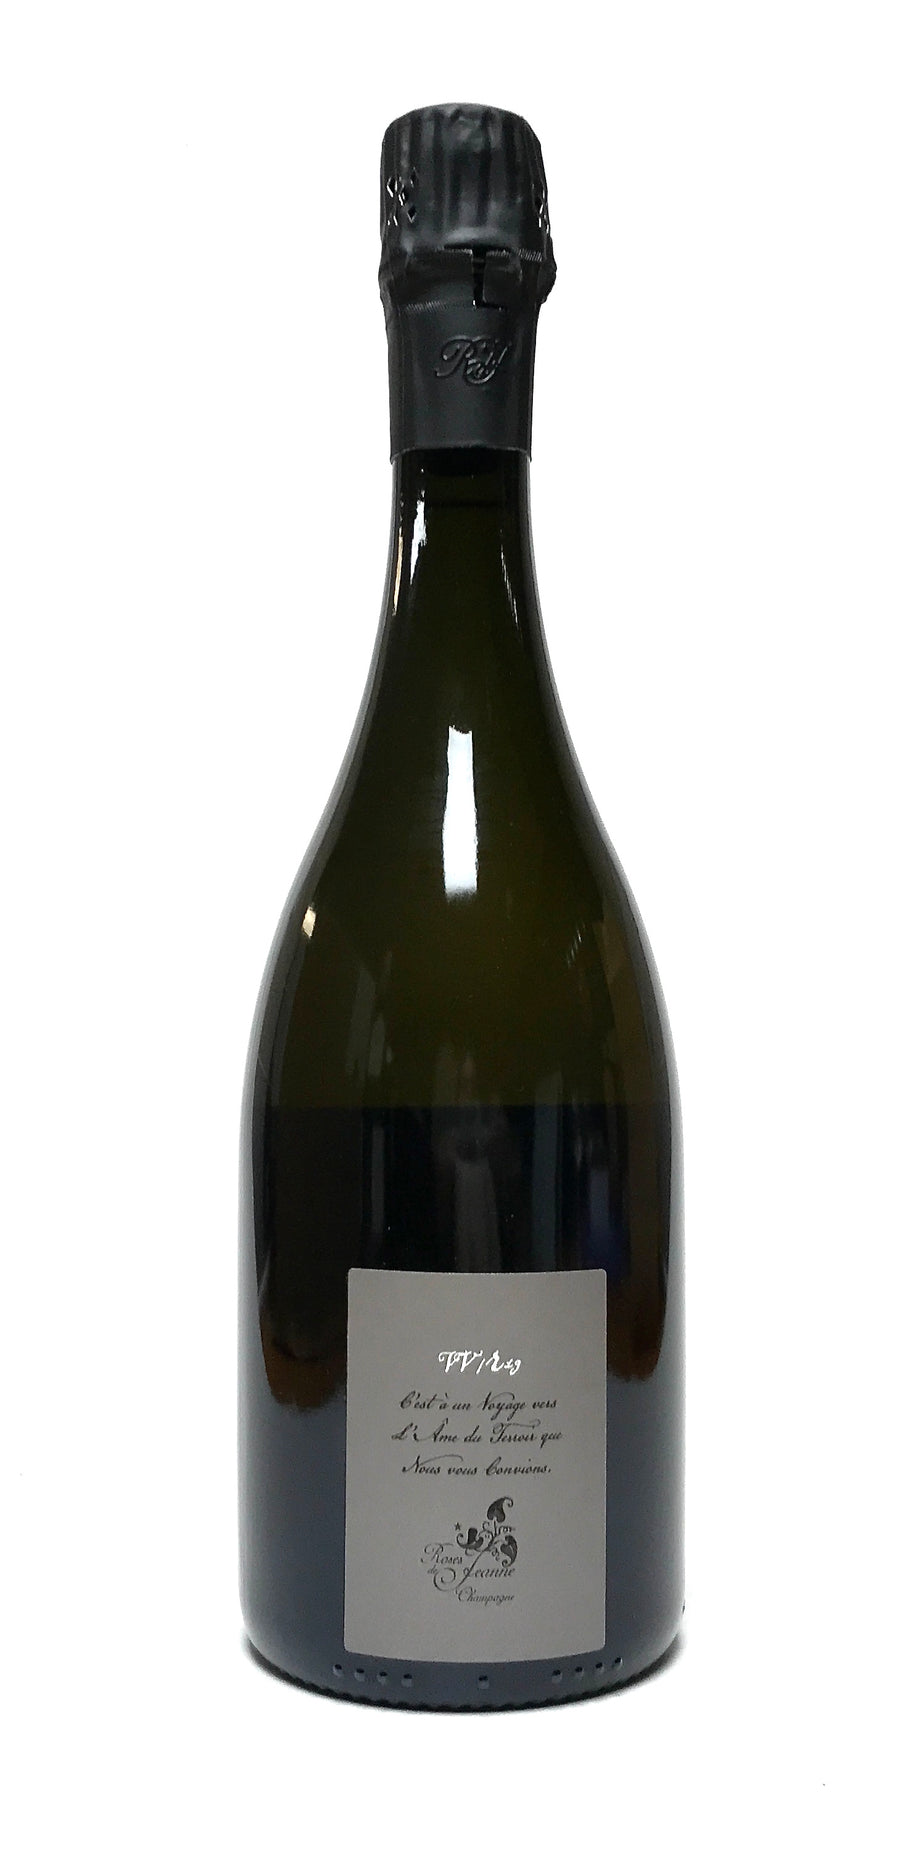 Bouchard, Cedric 2019 Champagne Roses de Jeanne ‘Cote de Val Vilaine’ Blanc de Noirs Brut